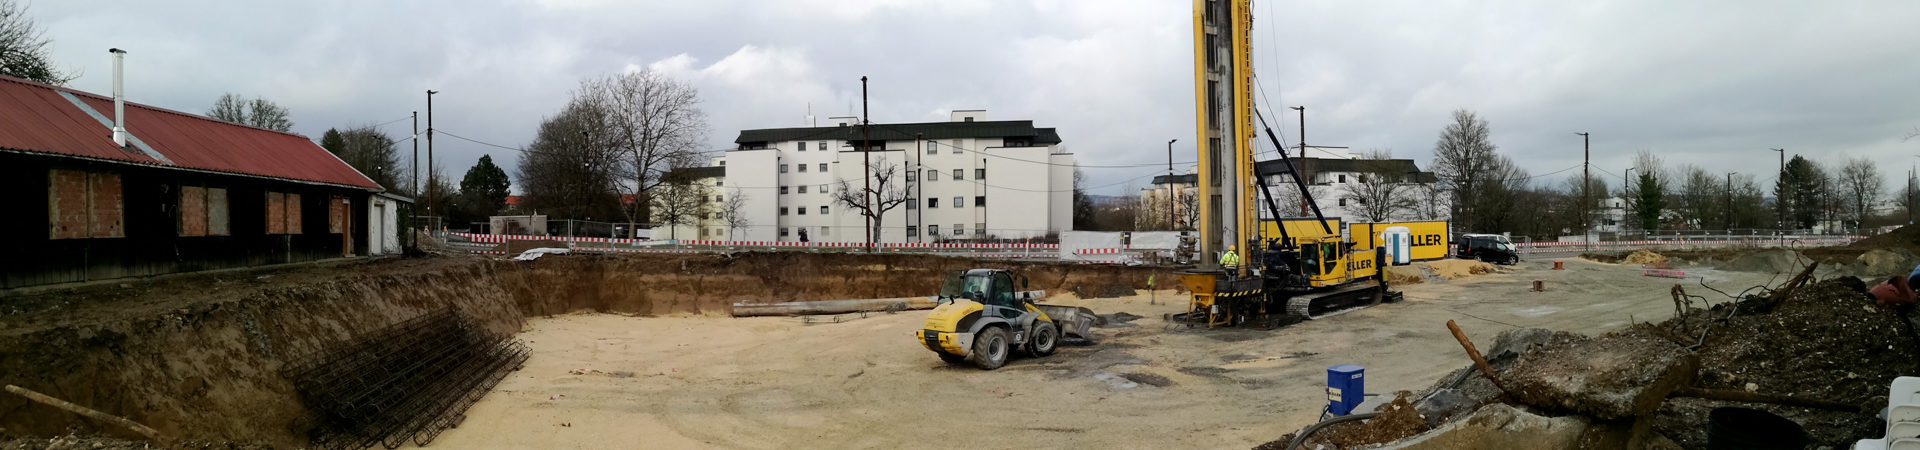 Gründungsarbeiten Hattler-Areal am Kuhberg, November/Dezember 2017